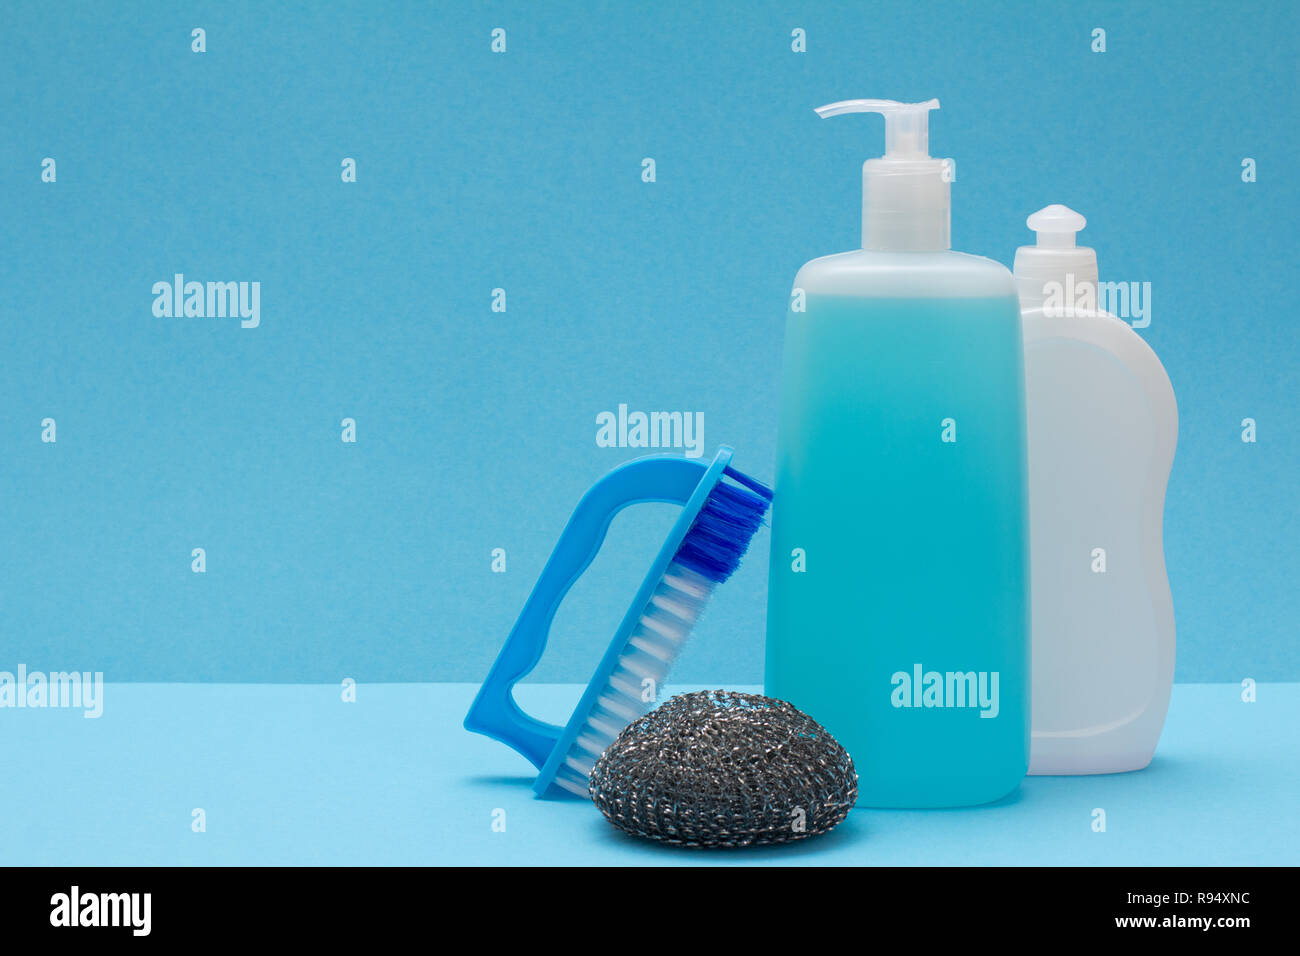 https://c8.alamy.com/compes/r94xnc/botellas-de-plastico-vidrio-y-detergente-limpiador-de-azulejos-cepillo-y-esponja-de-metal-sobre-fondo-azul-concepto-de-lavado-y-limpieza-r94xnc.jpg